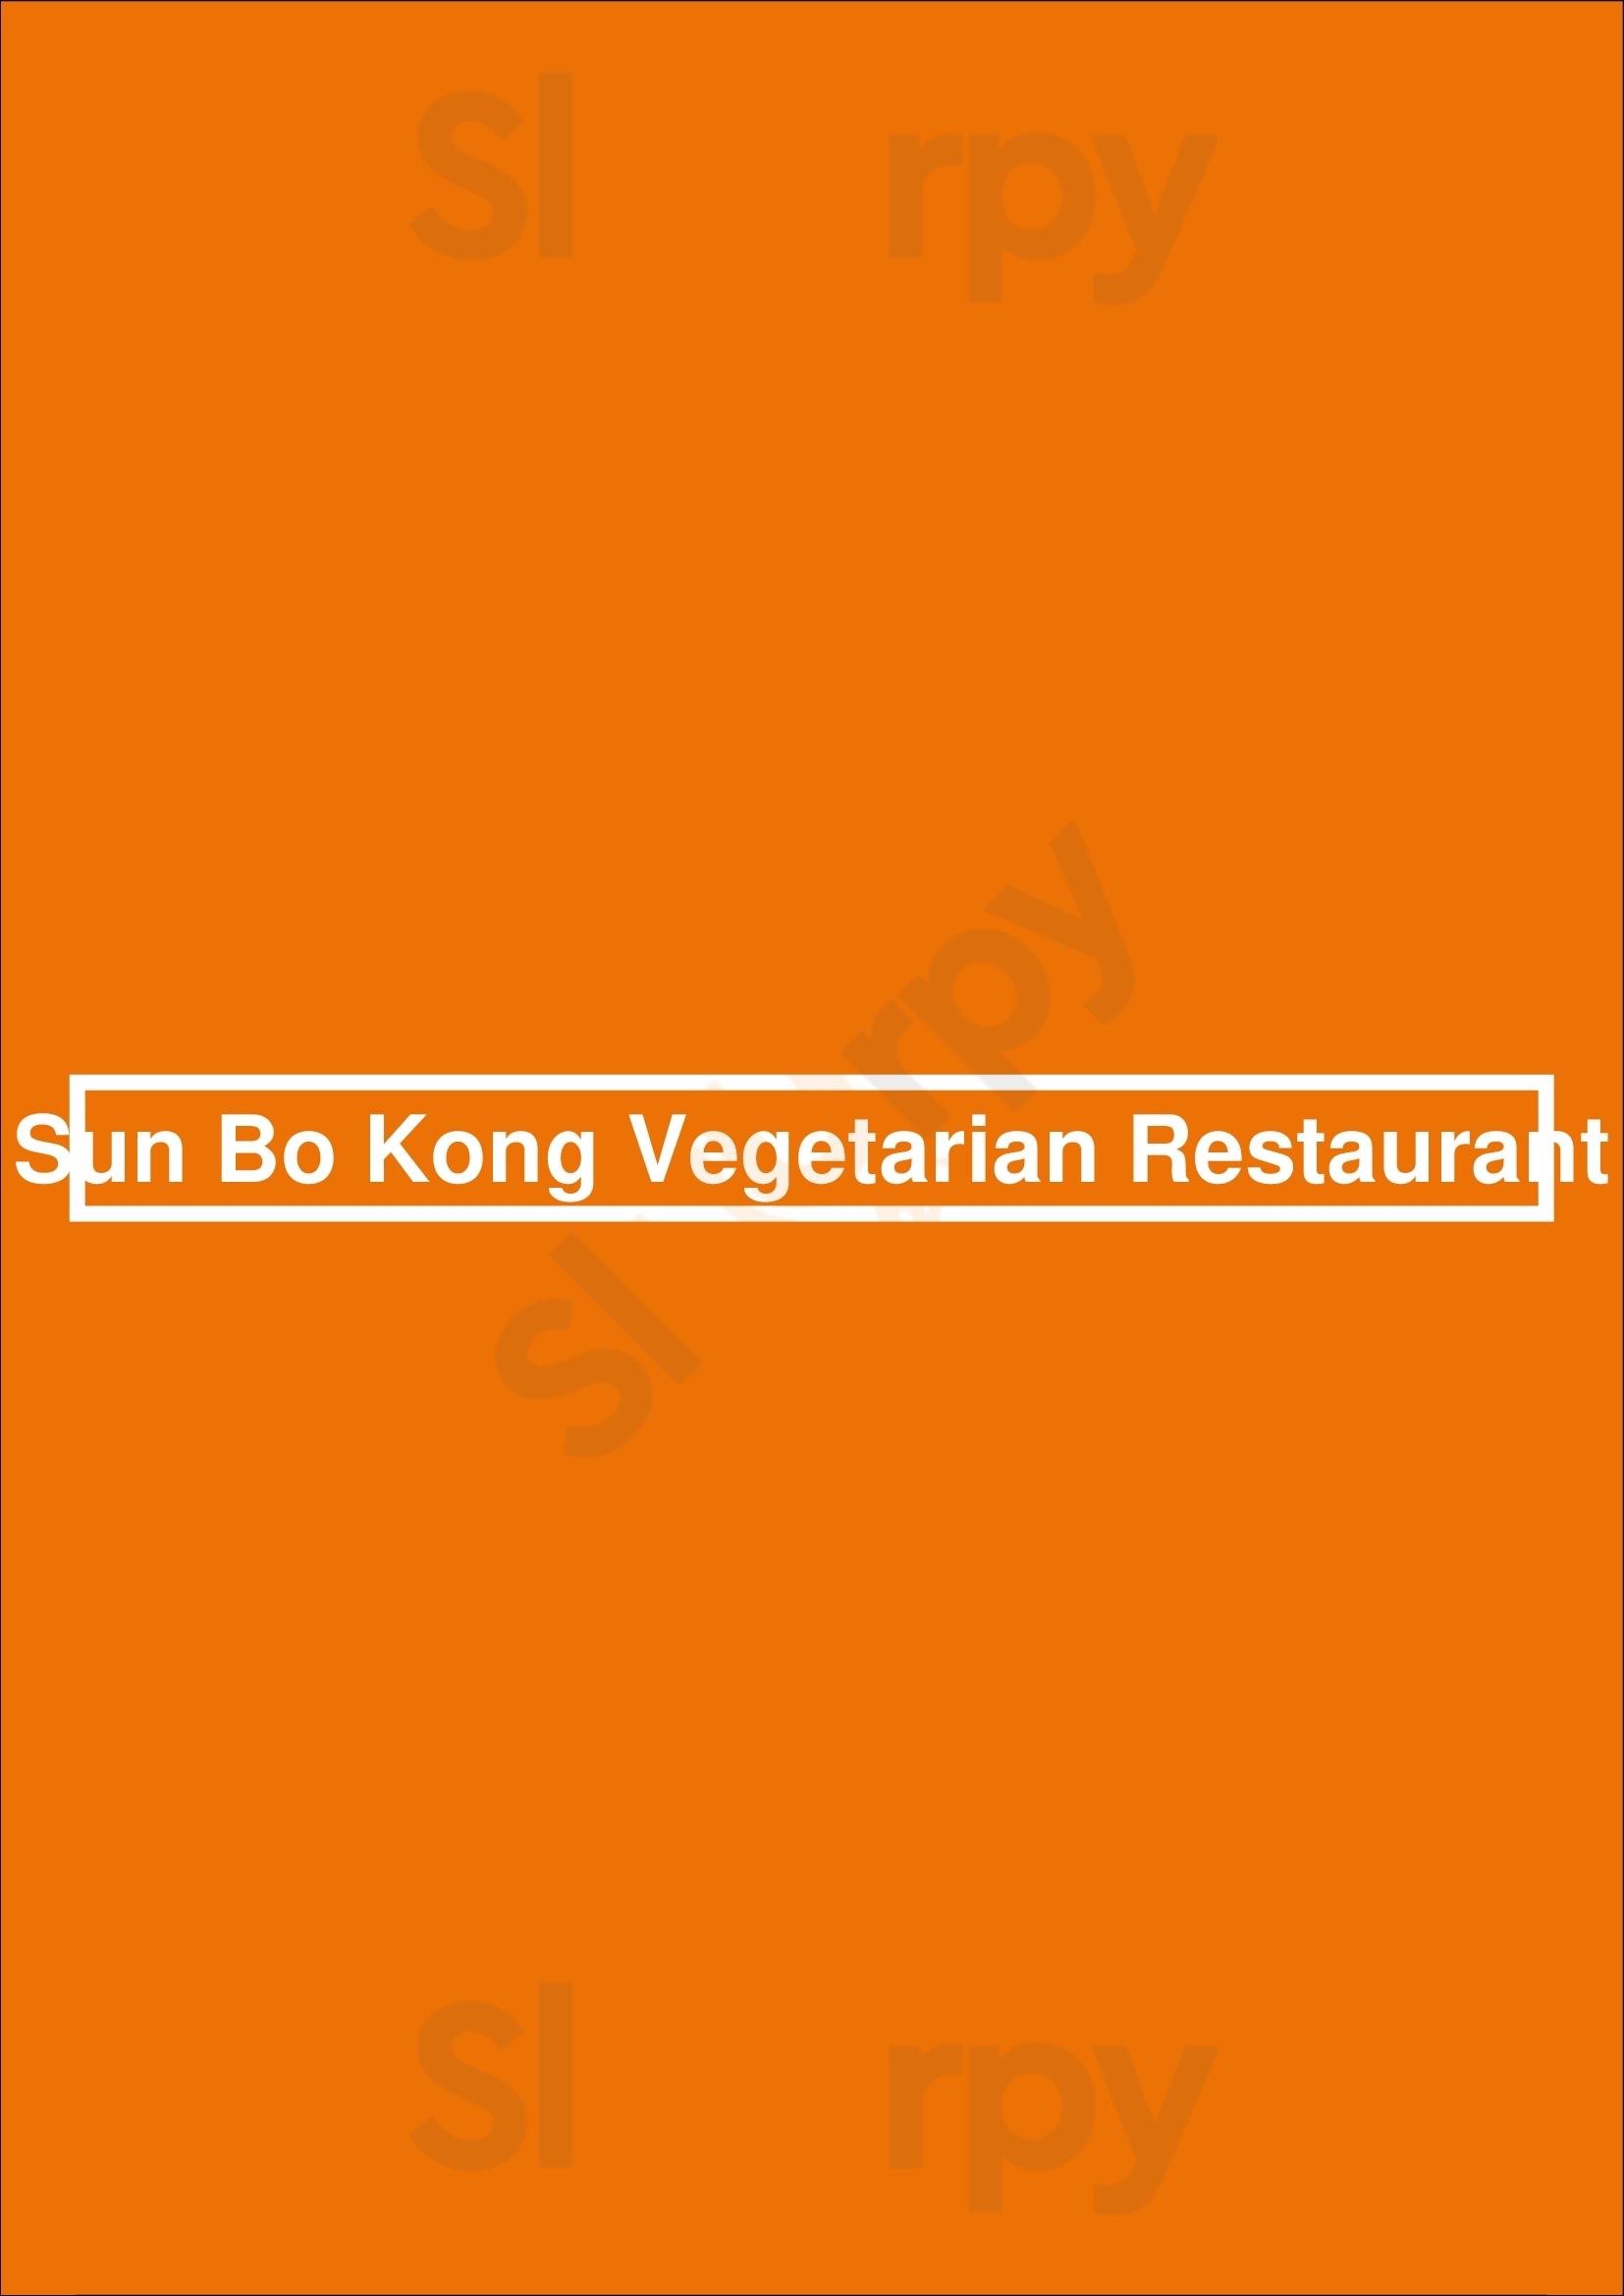 Sun Bo Kong Vegetarian Restaurant Vancouver Menu - 1